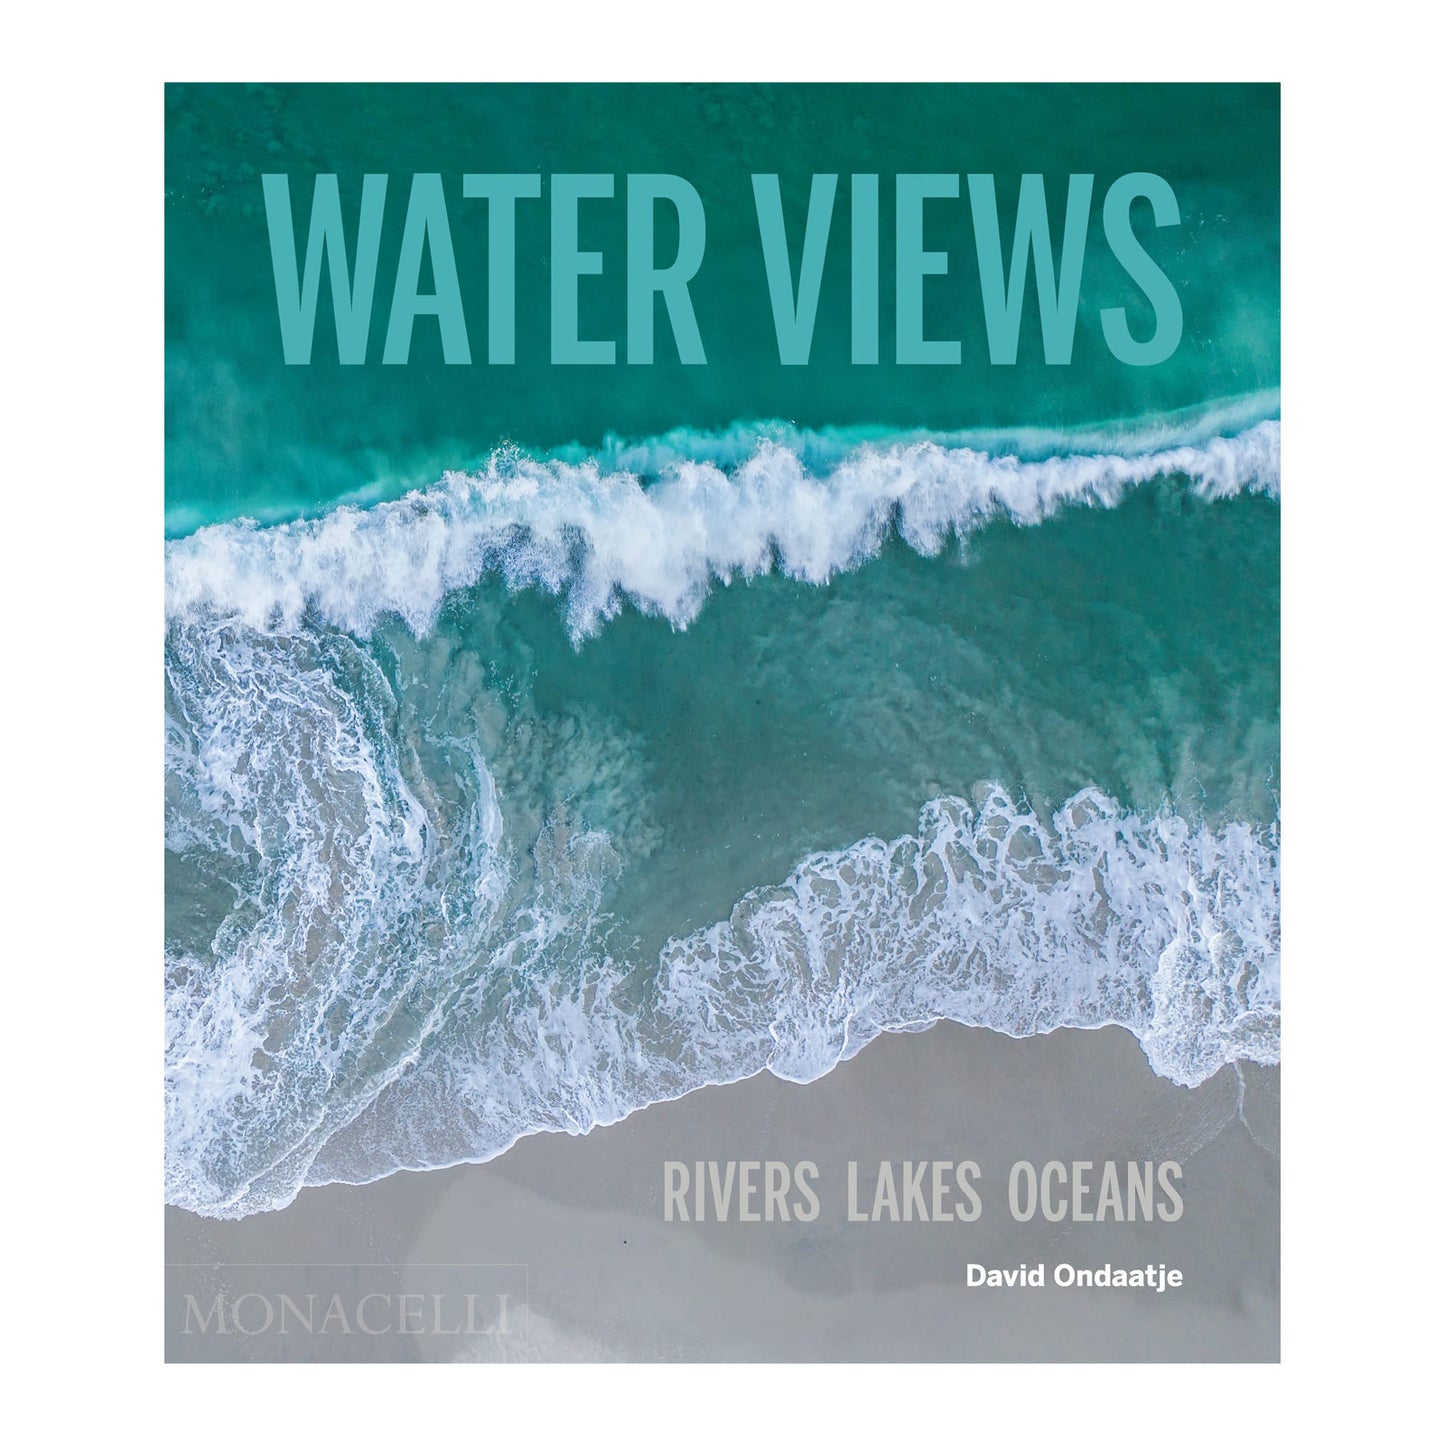 Water Views: Rivers Lakes Oceans